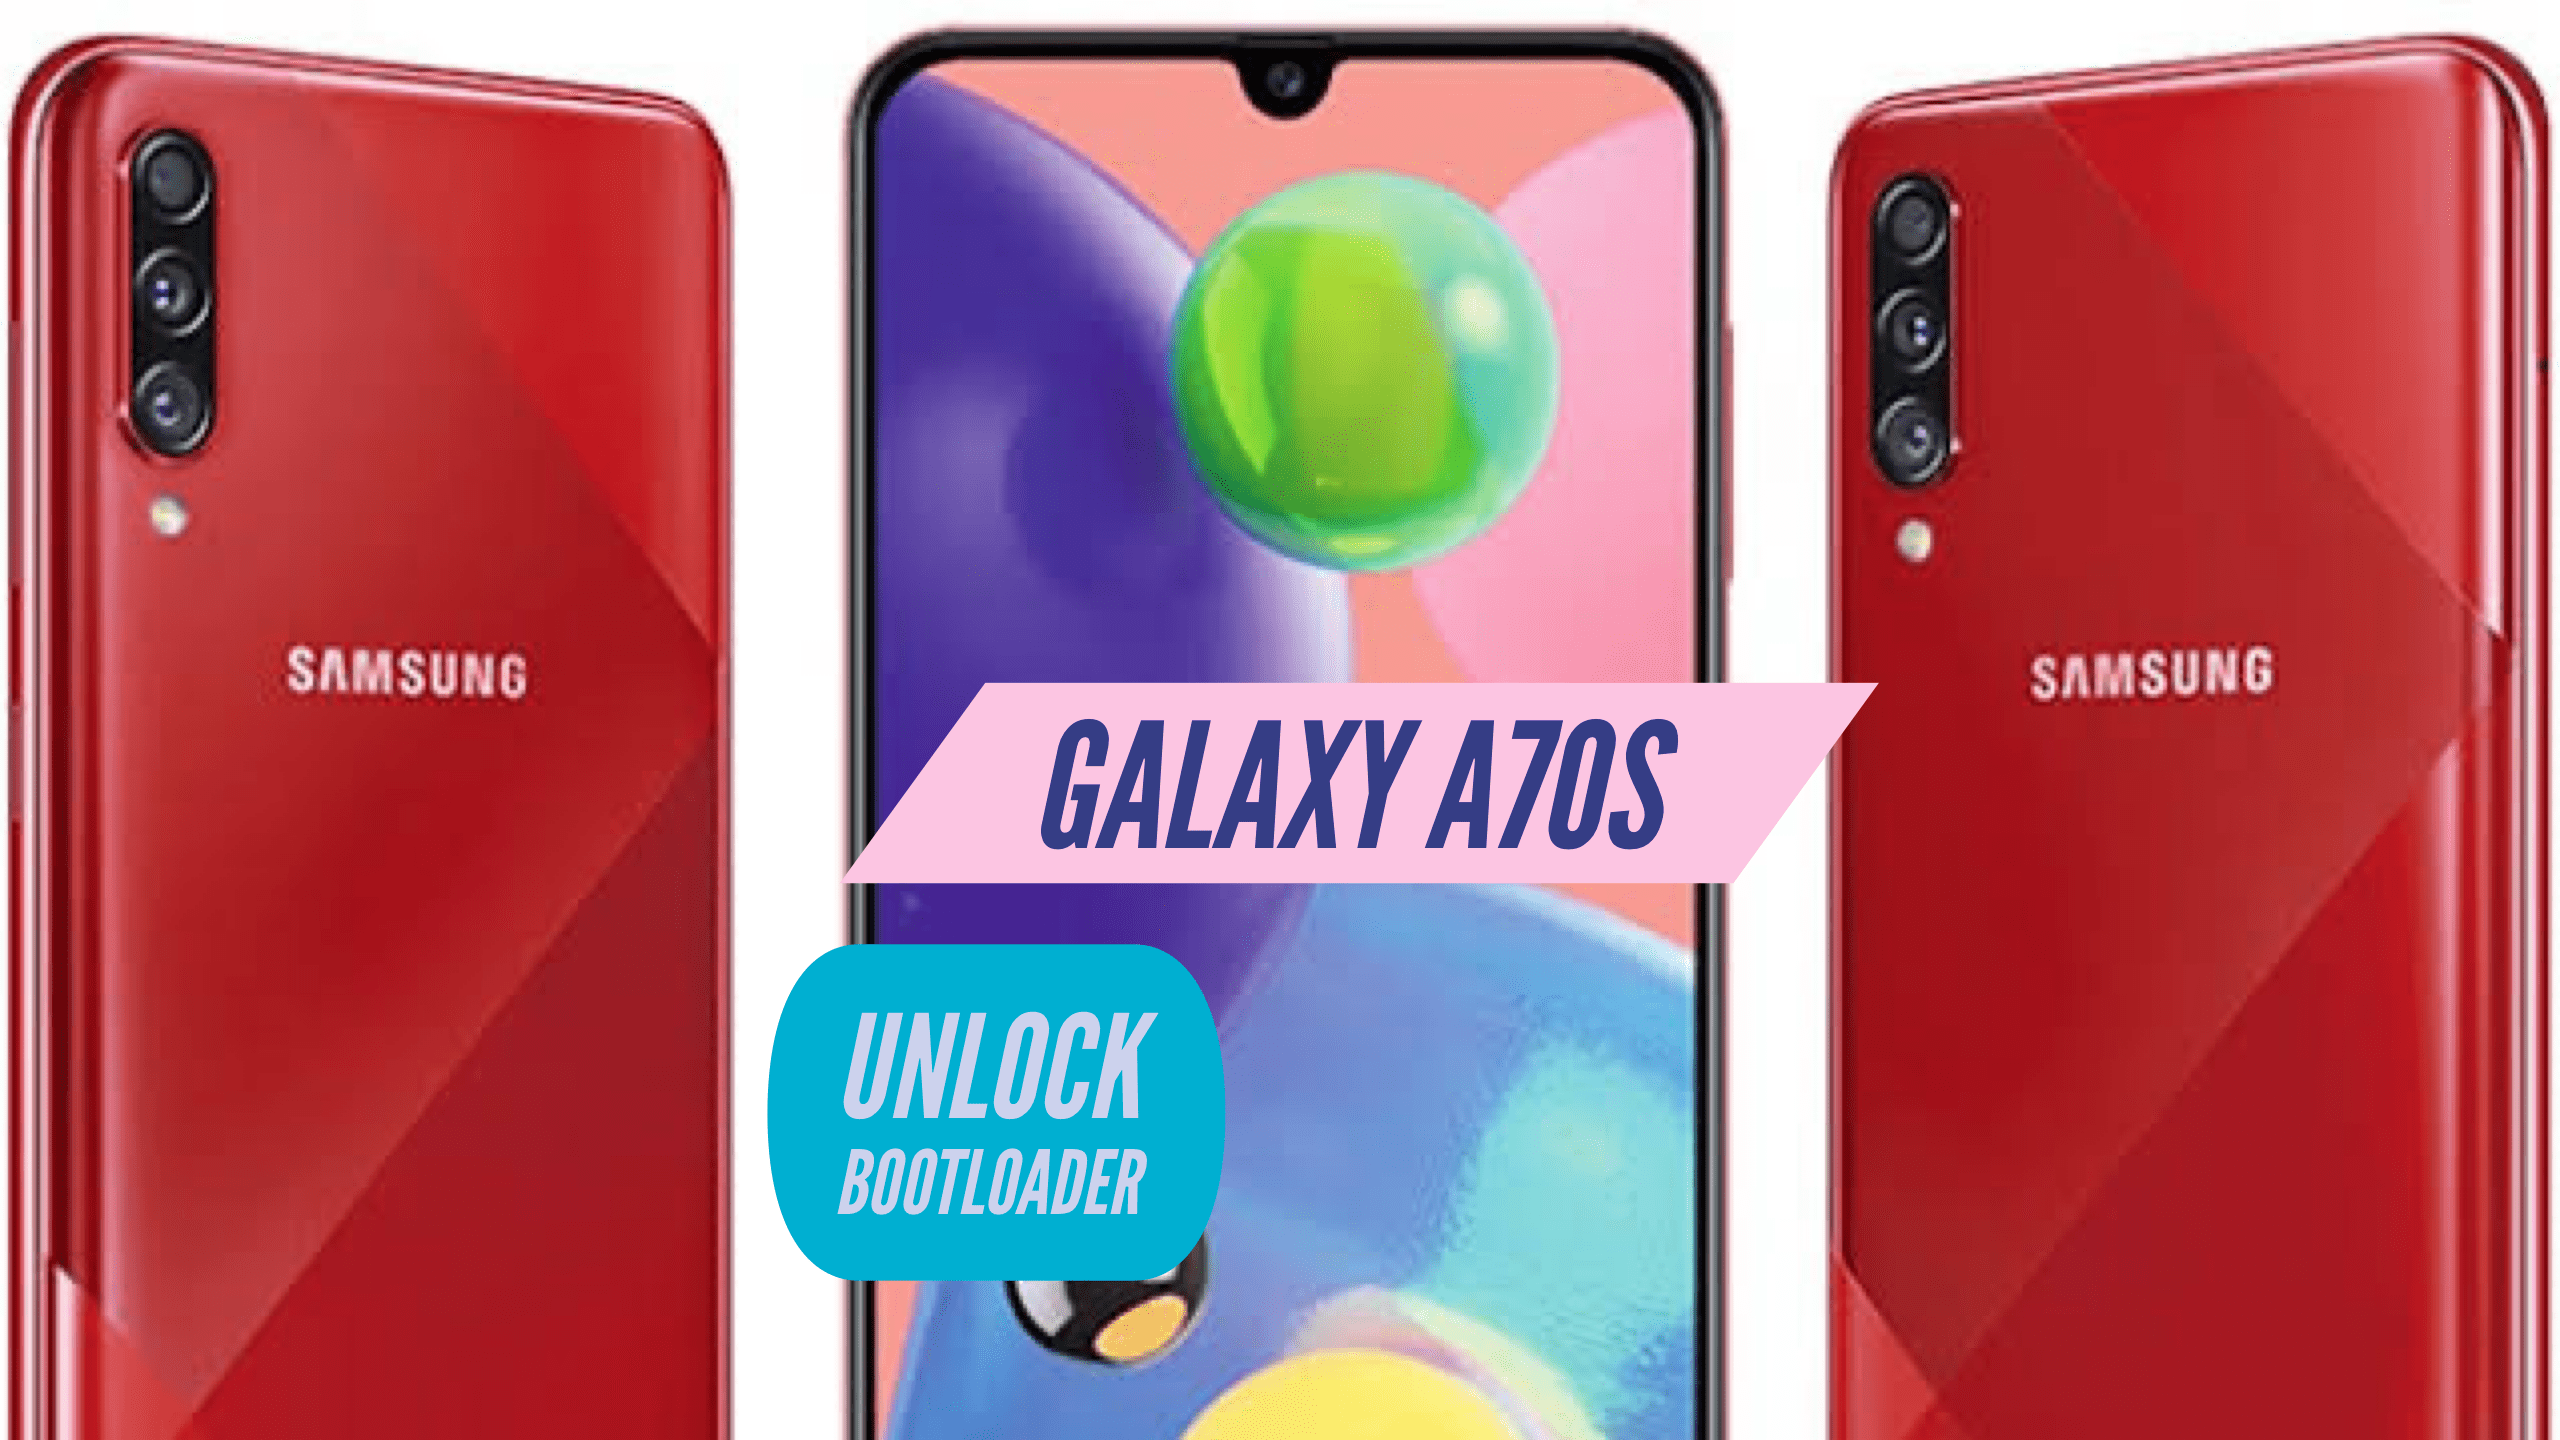 Unlock bootloader Galaxy A70s